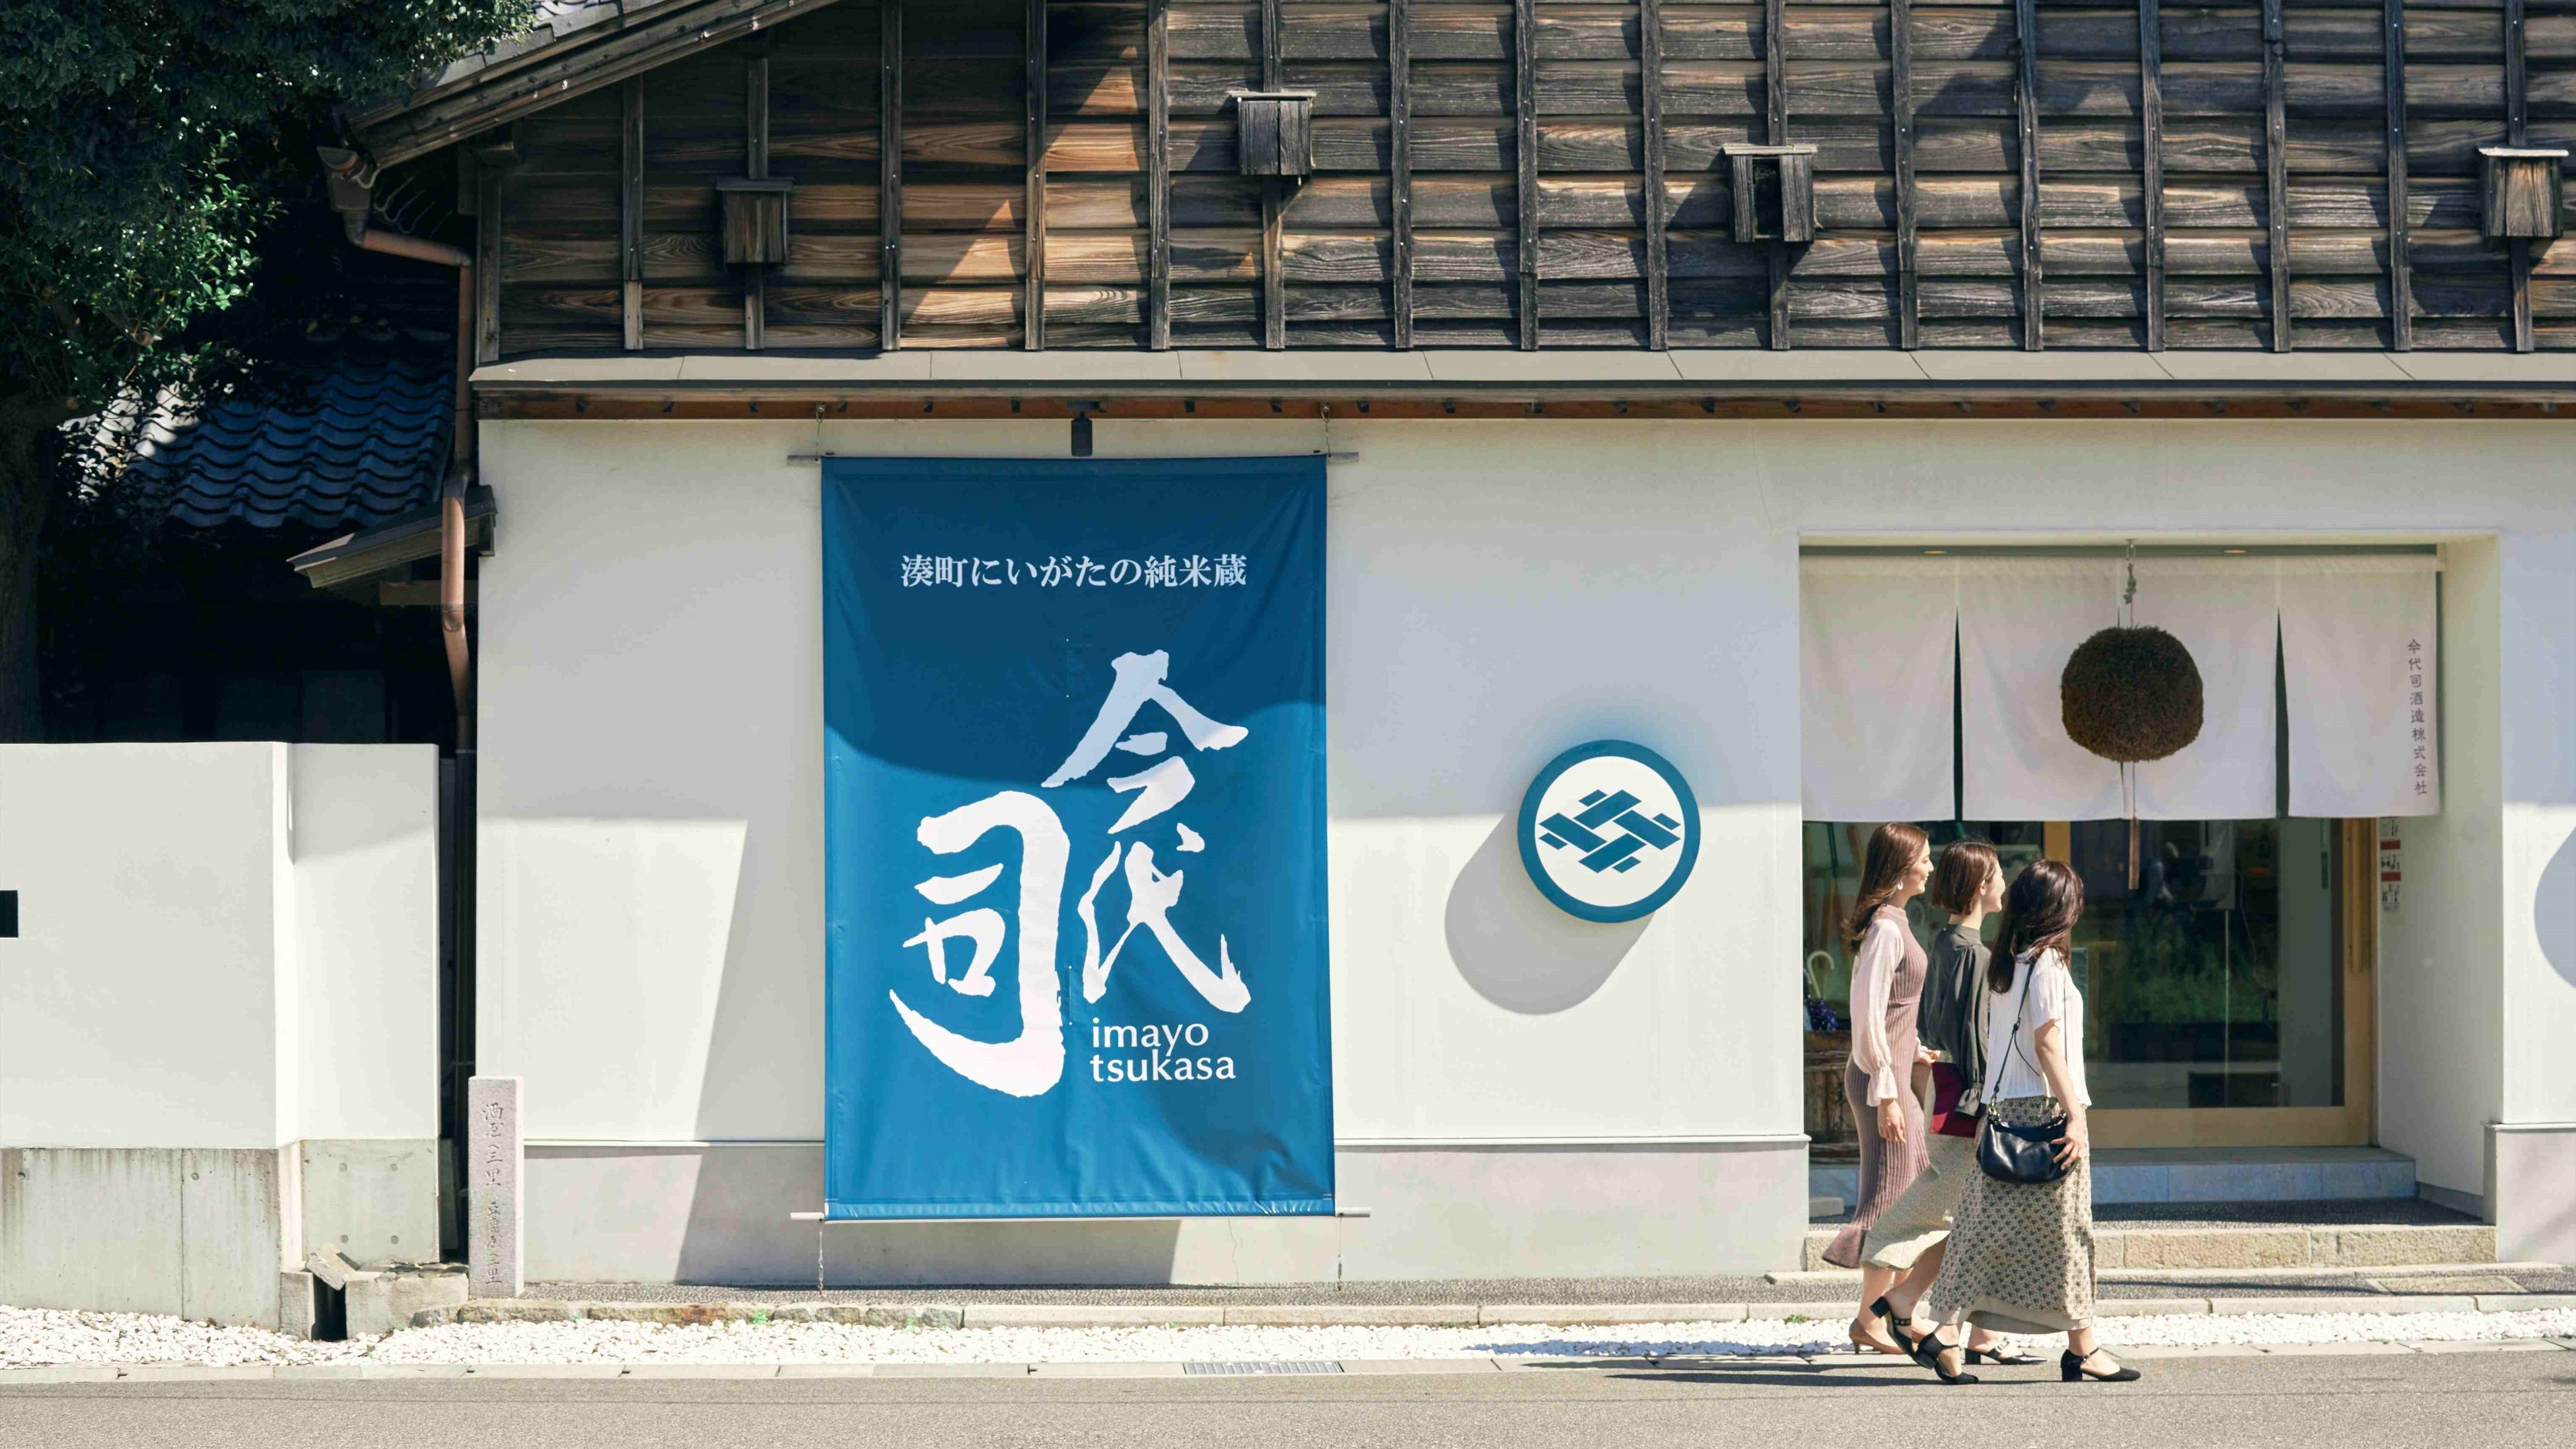 羽田空港を旅しよう！「ANA Blue Base」「羽田空港第3ターミナル」見学ツアーと天然温泉を楽しむ日帰り・宿泊プランの販売を開始！